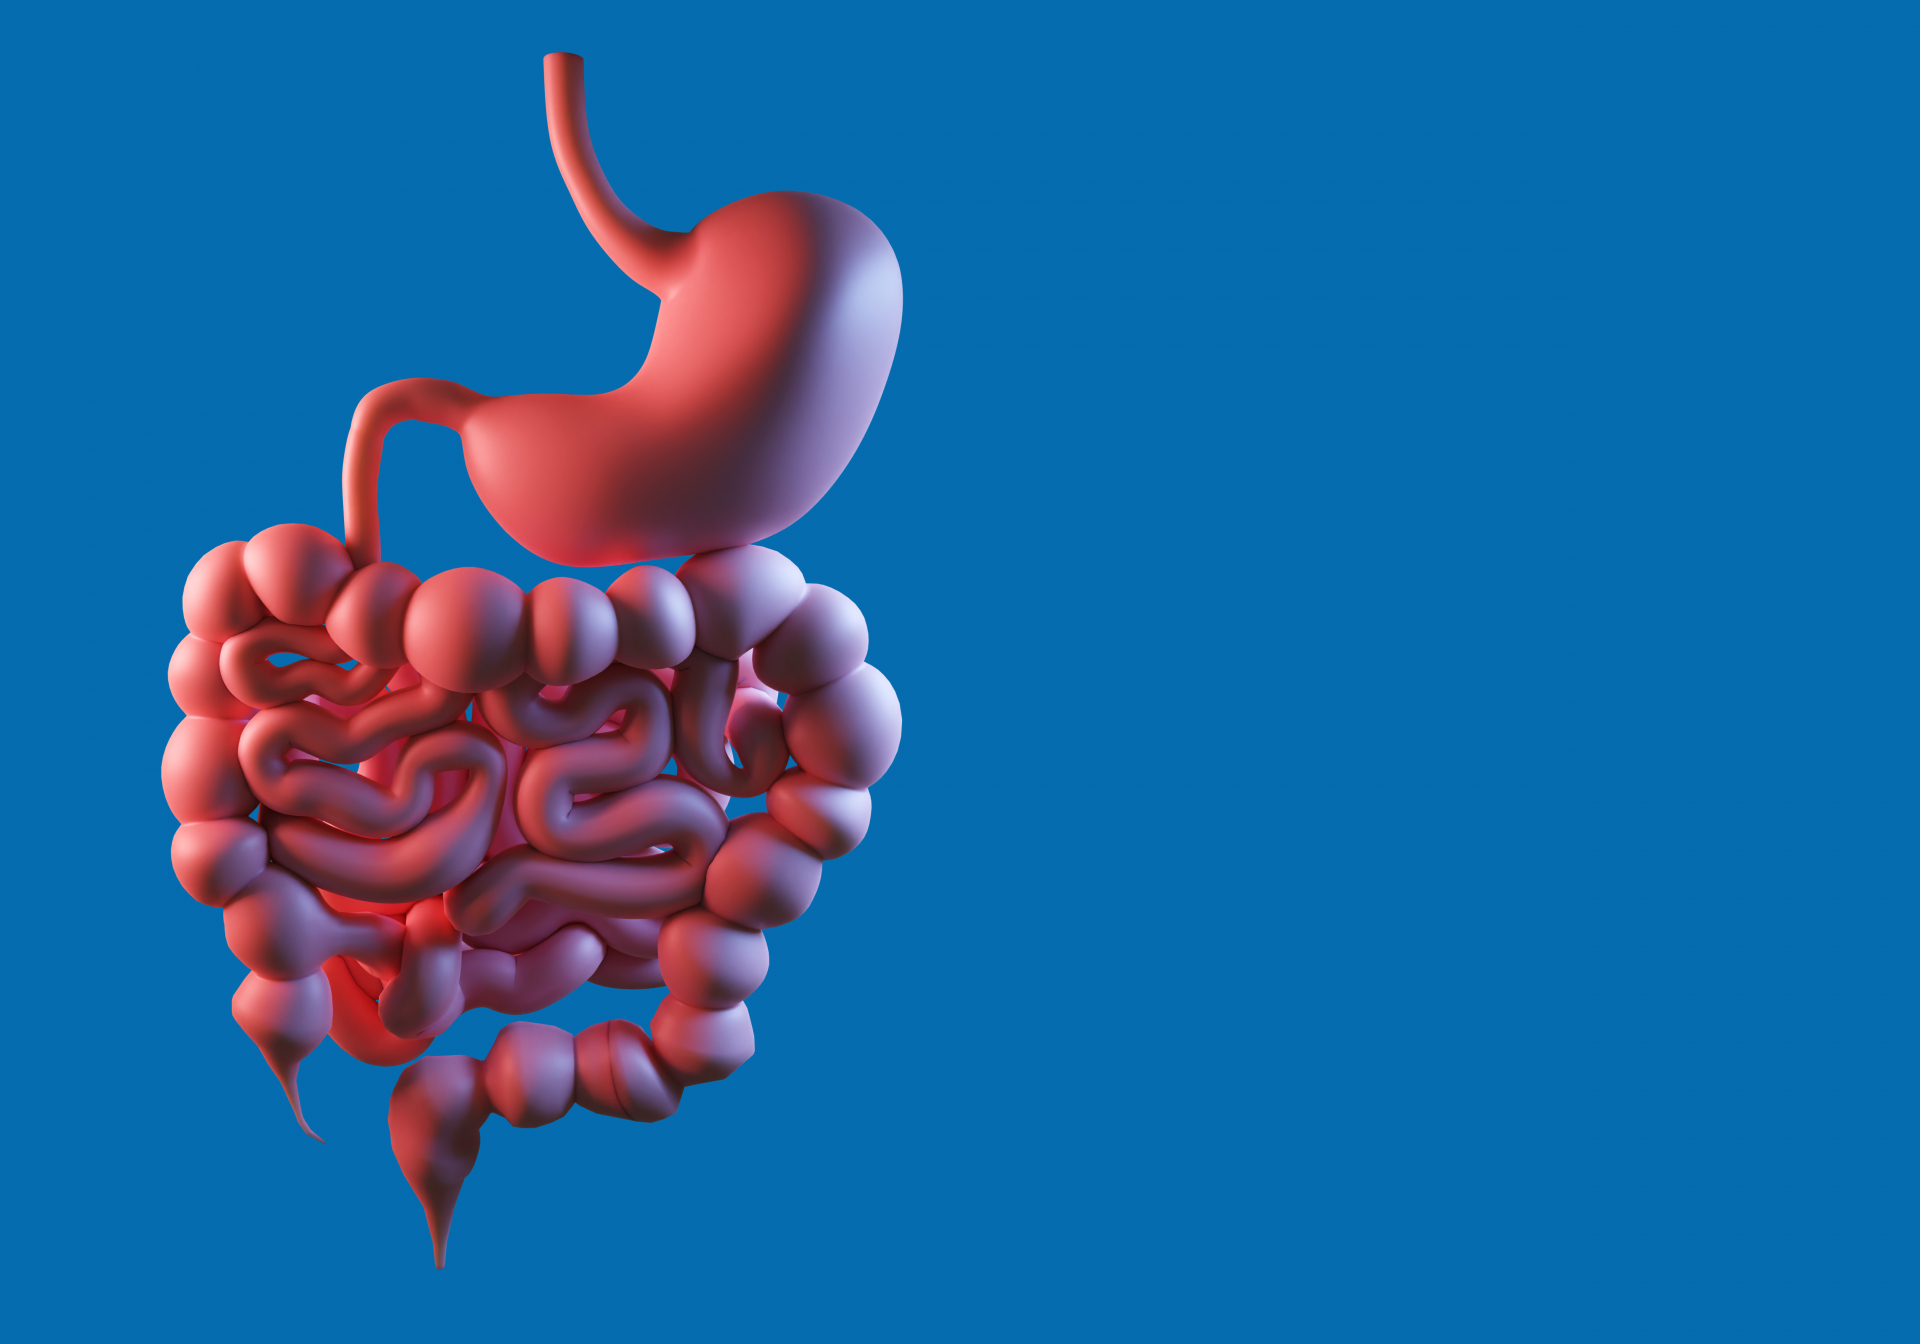 Malaltia inflamatòria intestinal: paper del laboratori clínic en el diagnòstic